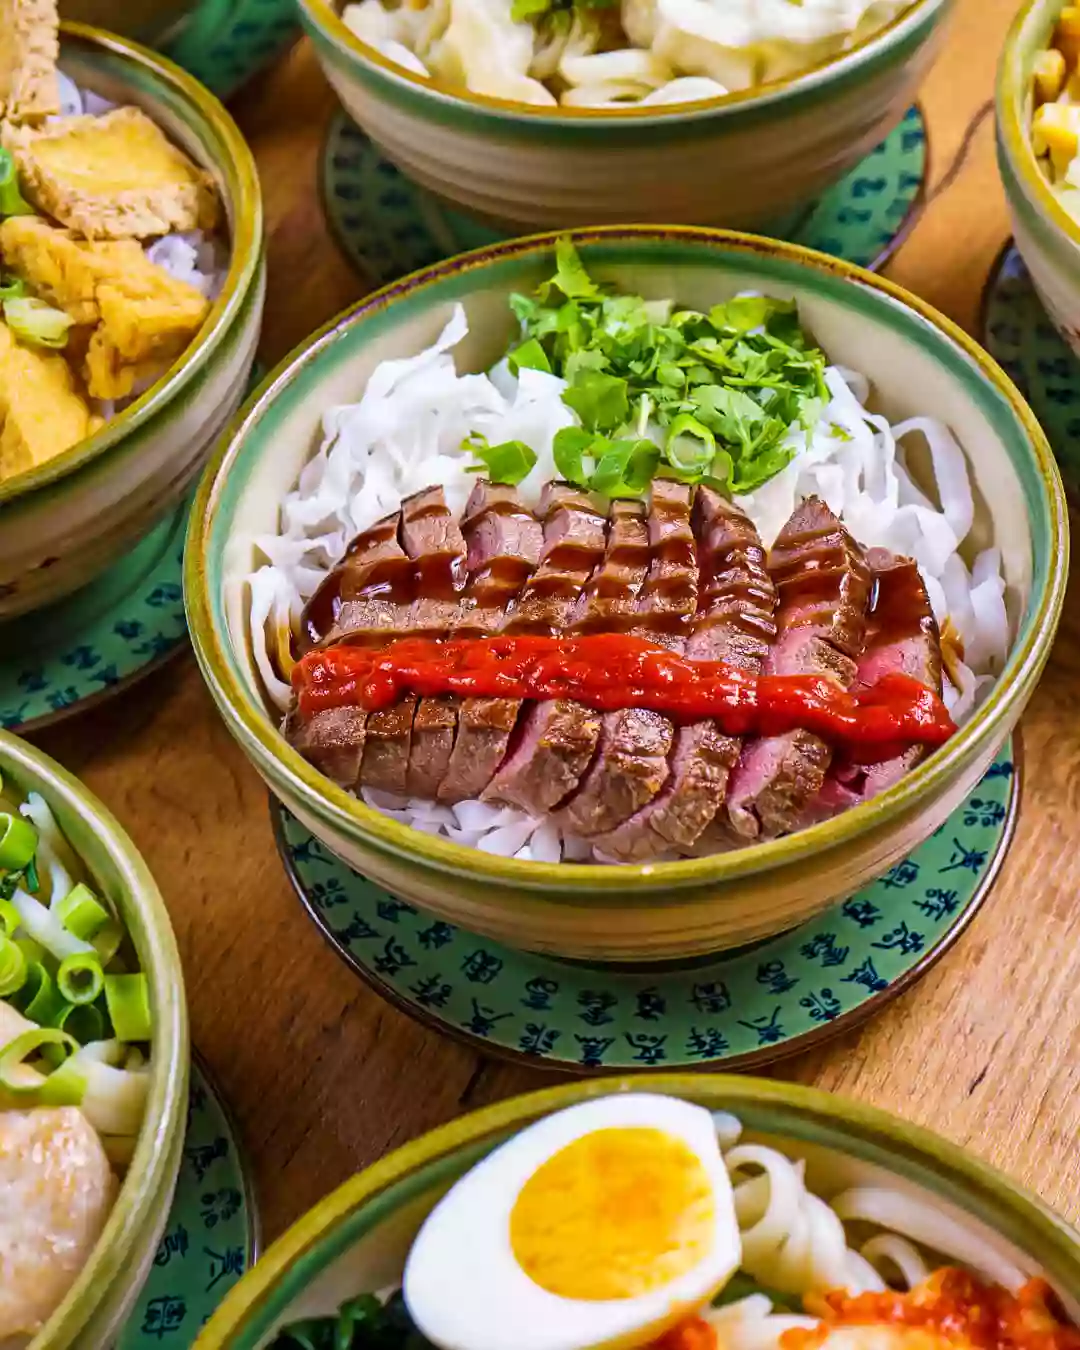 Kagi Food - Asiatische Fusion Küche & Vegetarisch